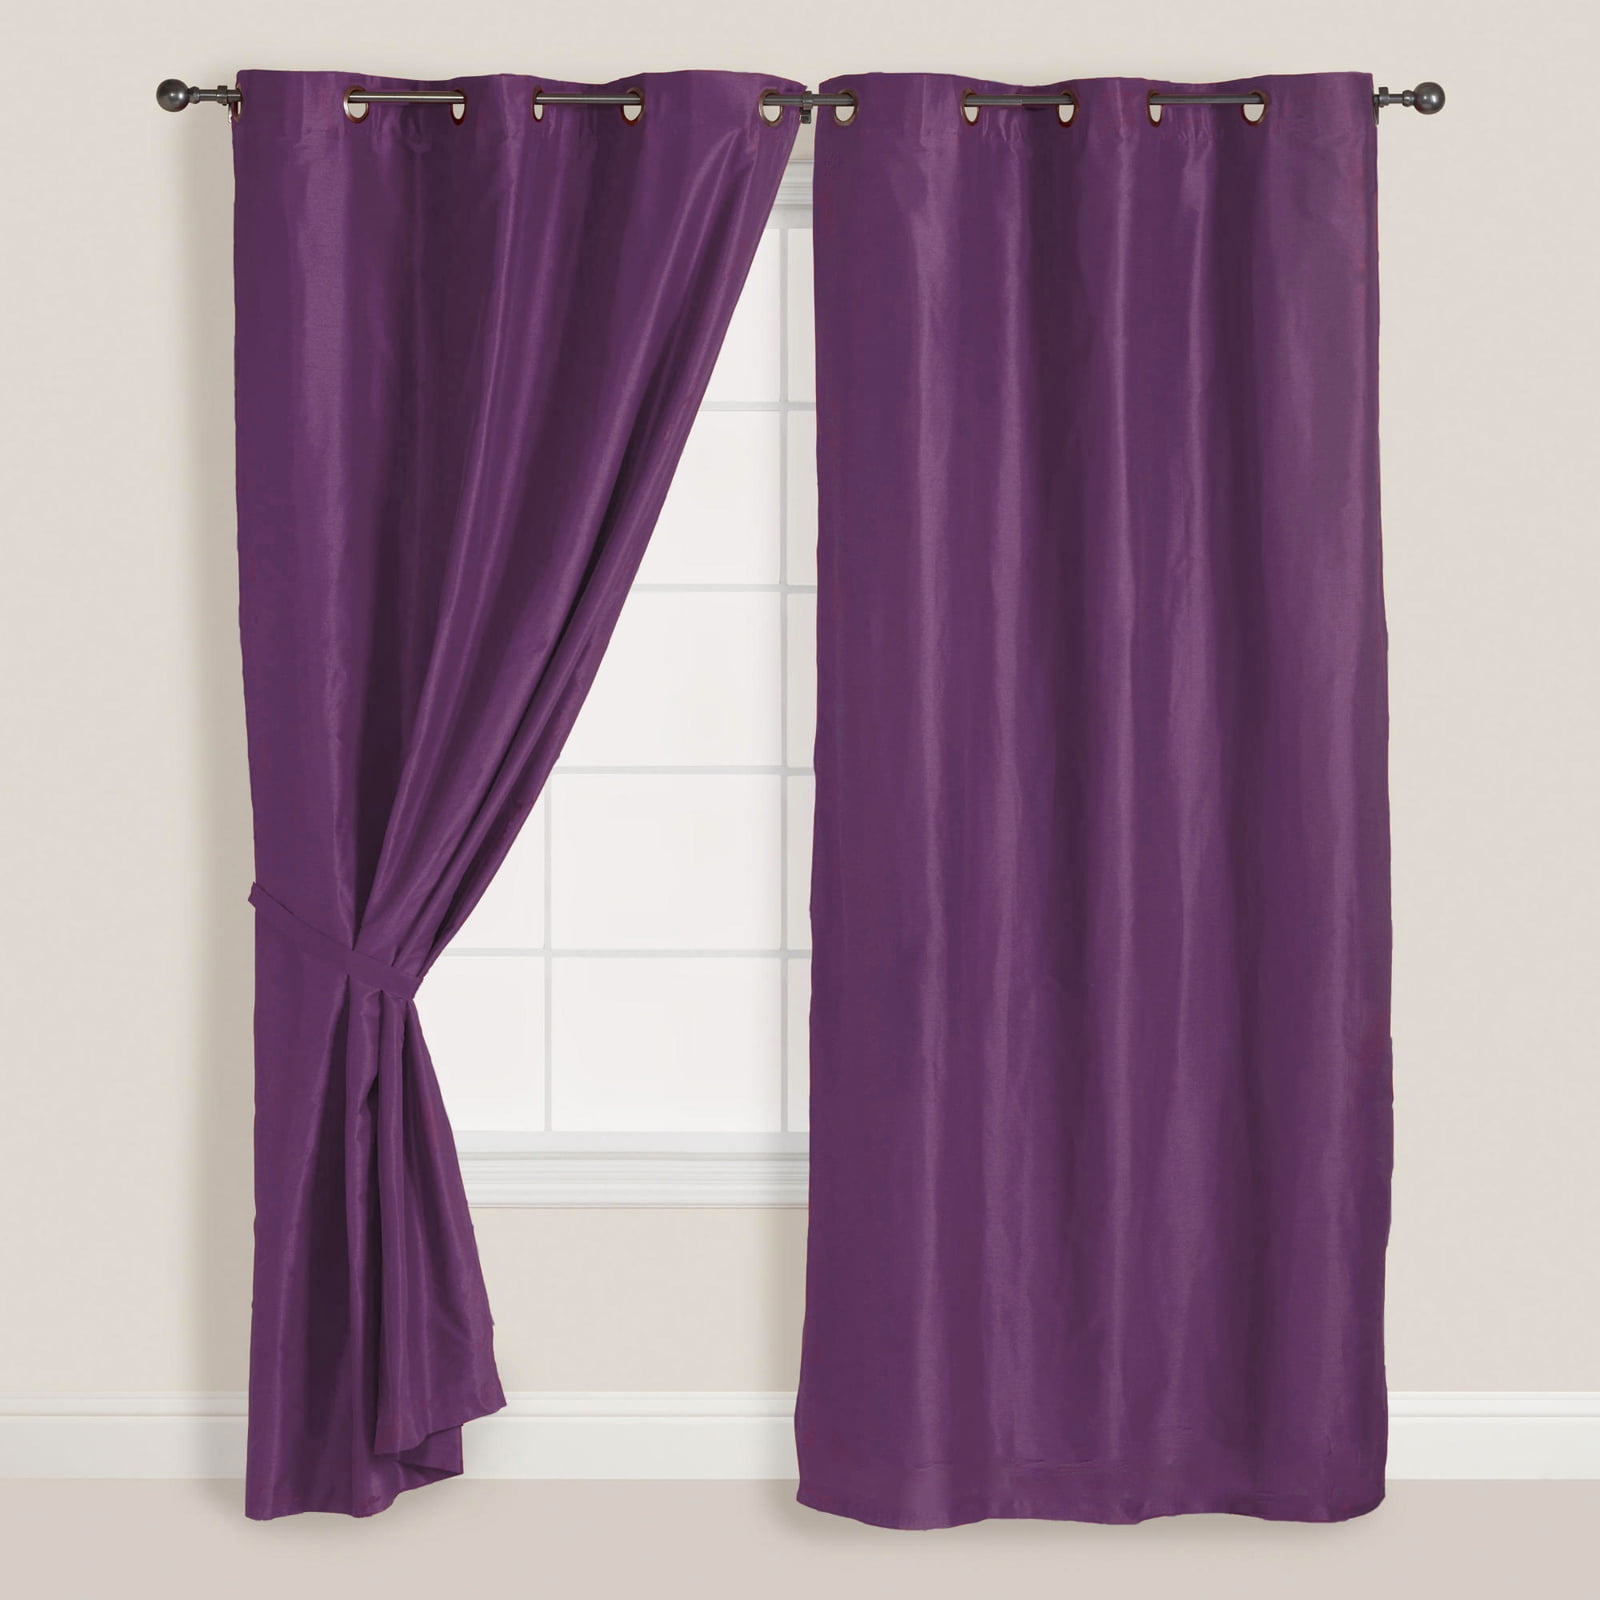 2x Panels/Pair Faux Suede Metal Grommet Curtain Drape Set Washable 54 x 84 